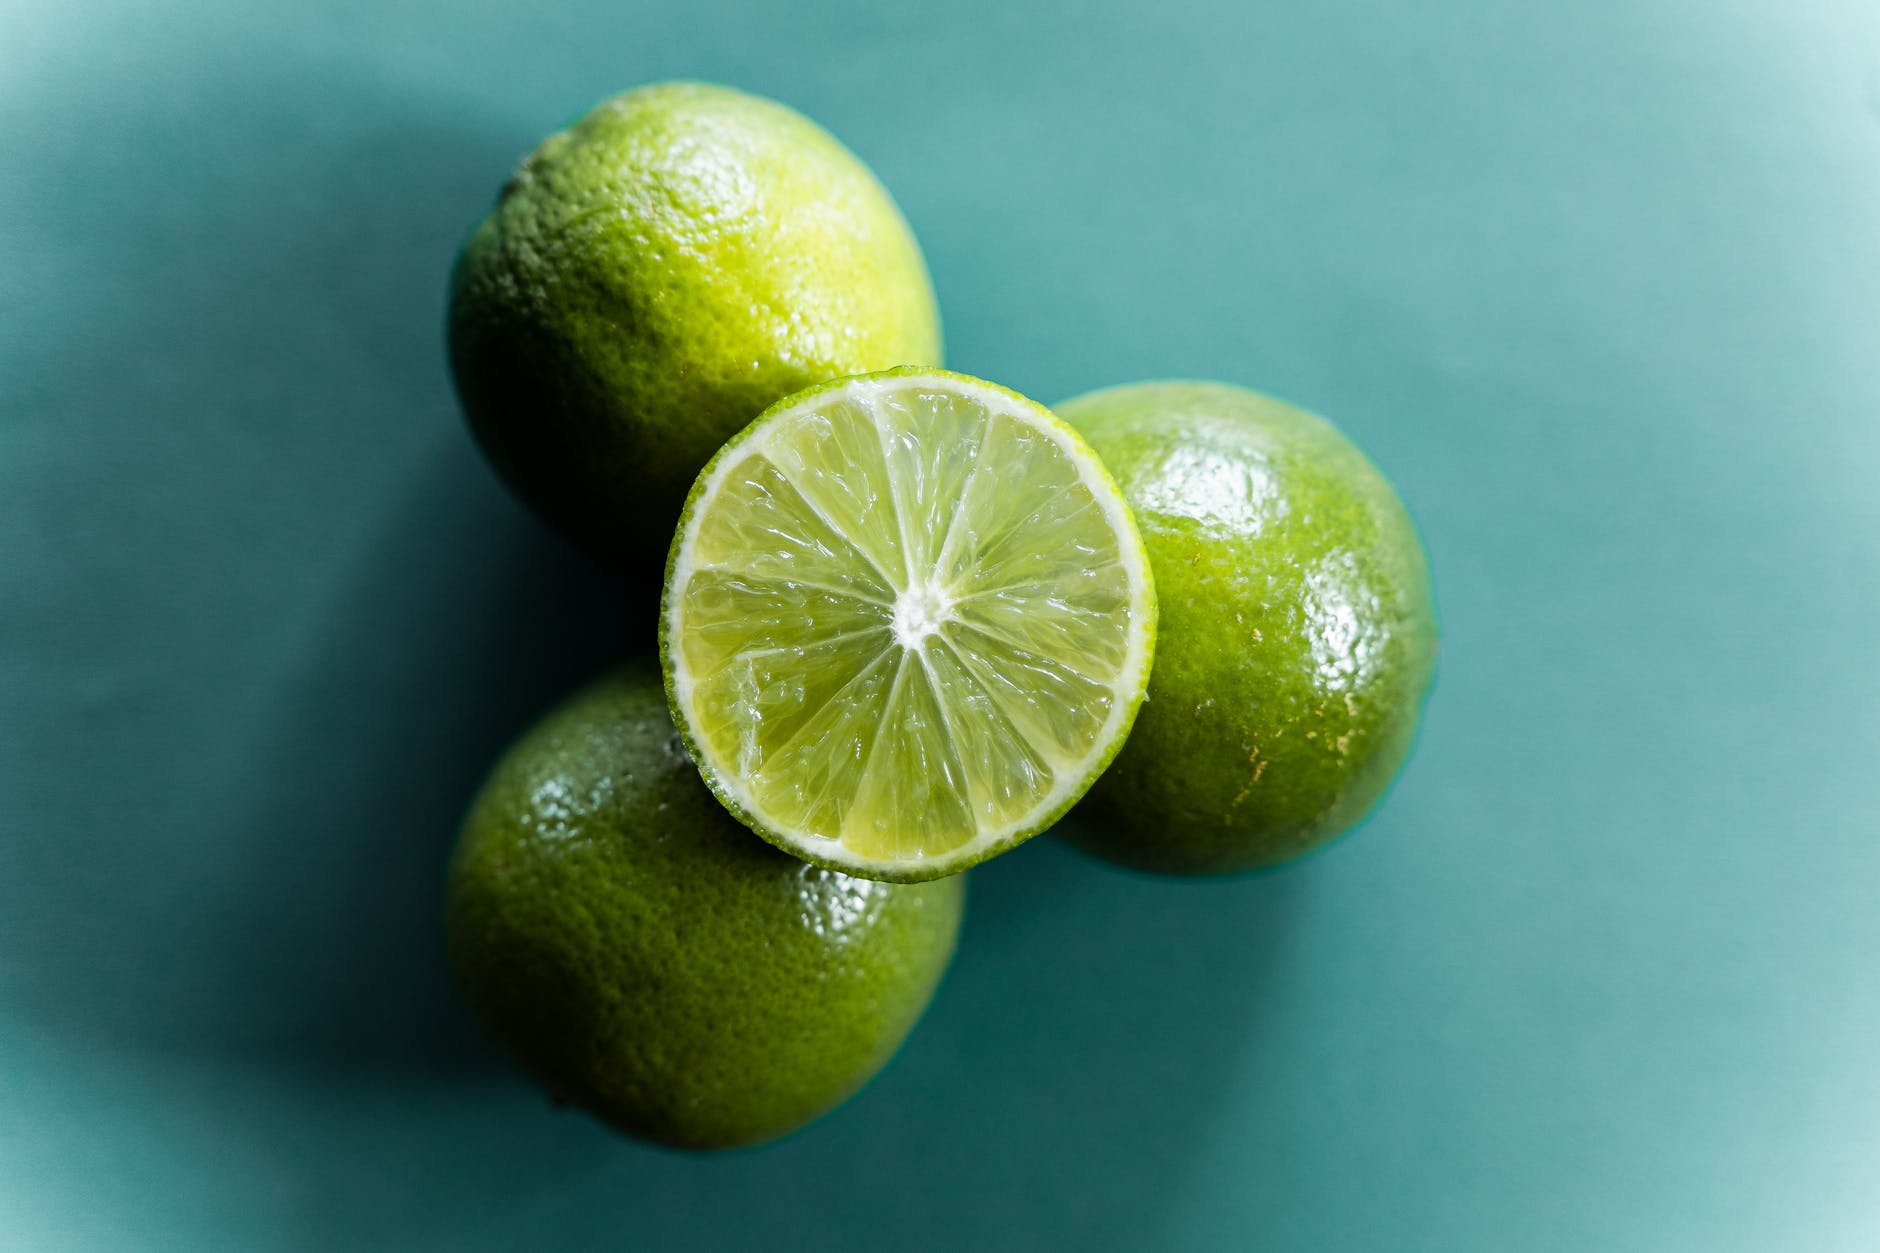 Esponja embebida em suco de limão: confira essa dica incrível!